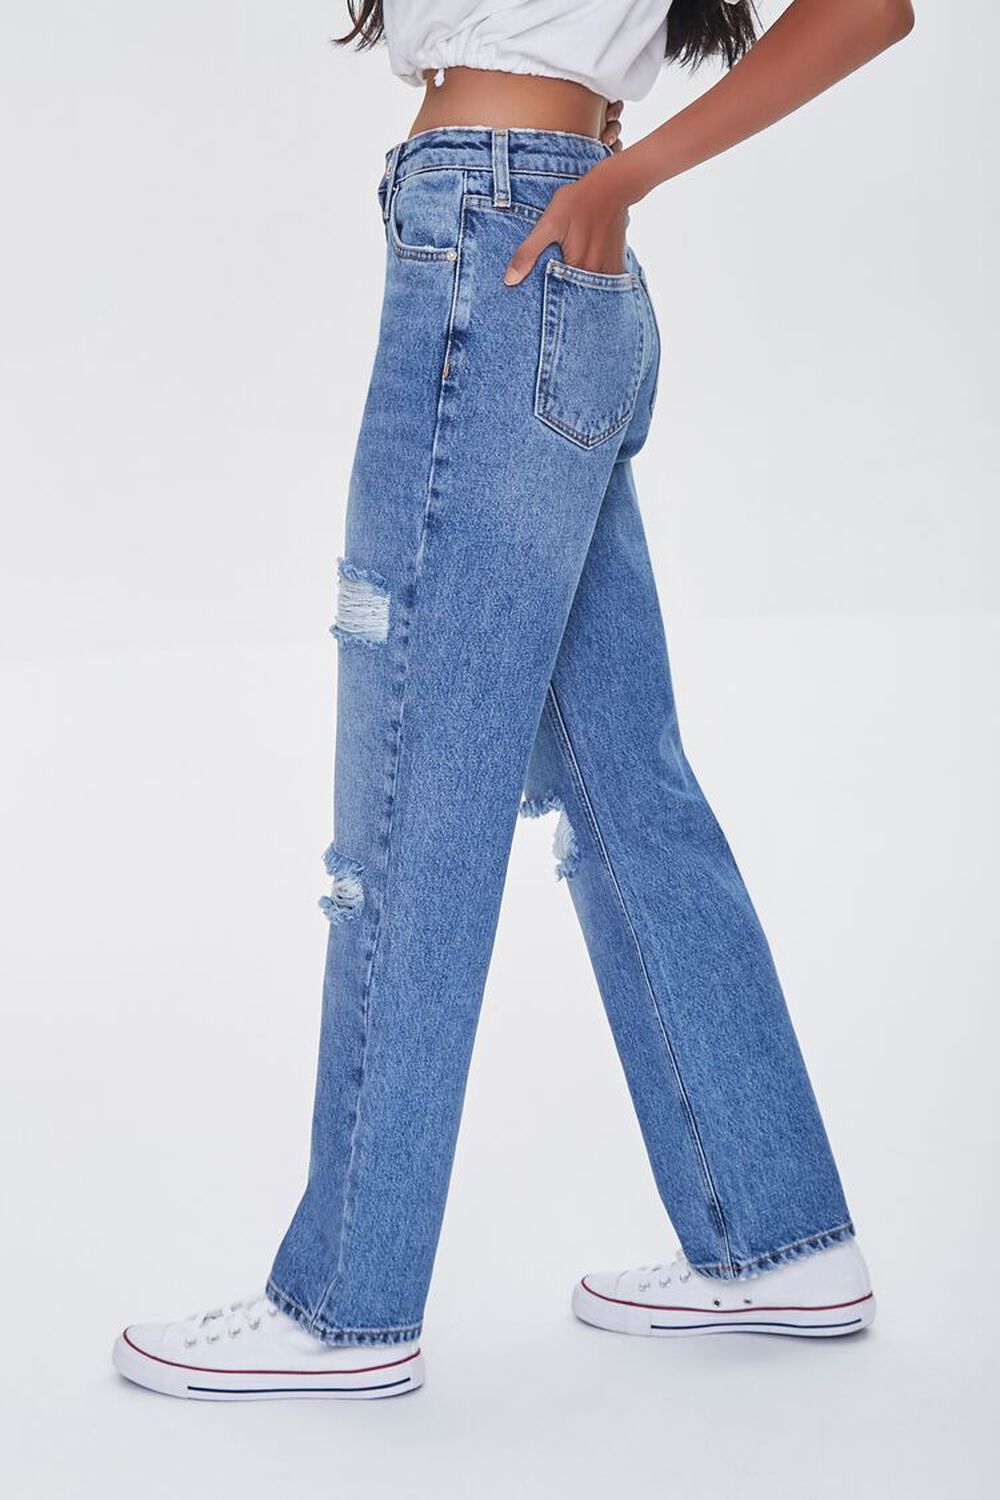 MEDIUM DENIM Premium Distressed 90s-Fit Jeans, image 3